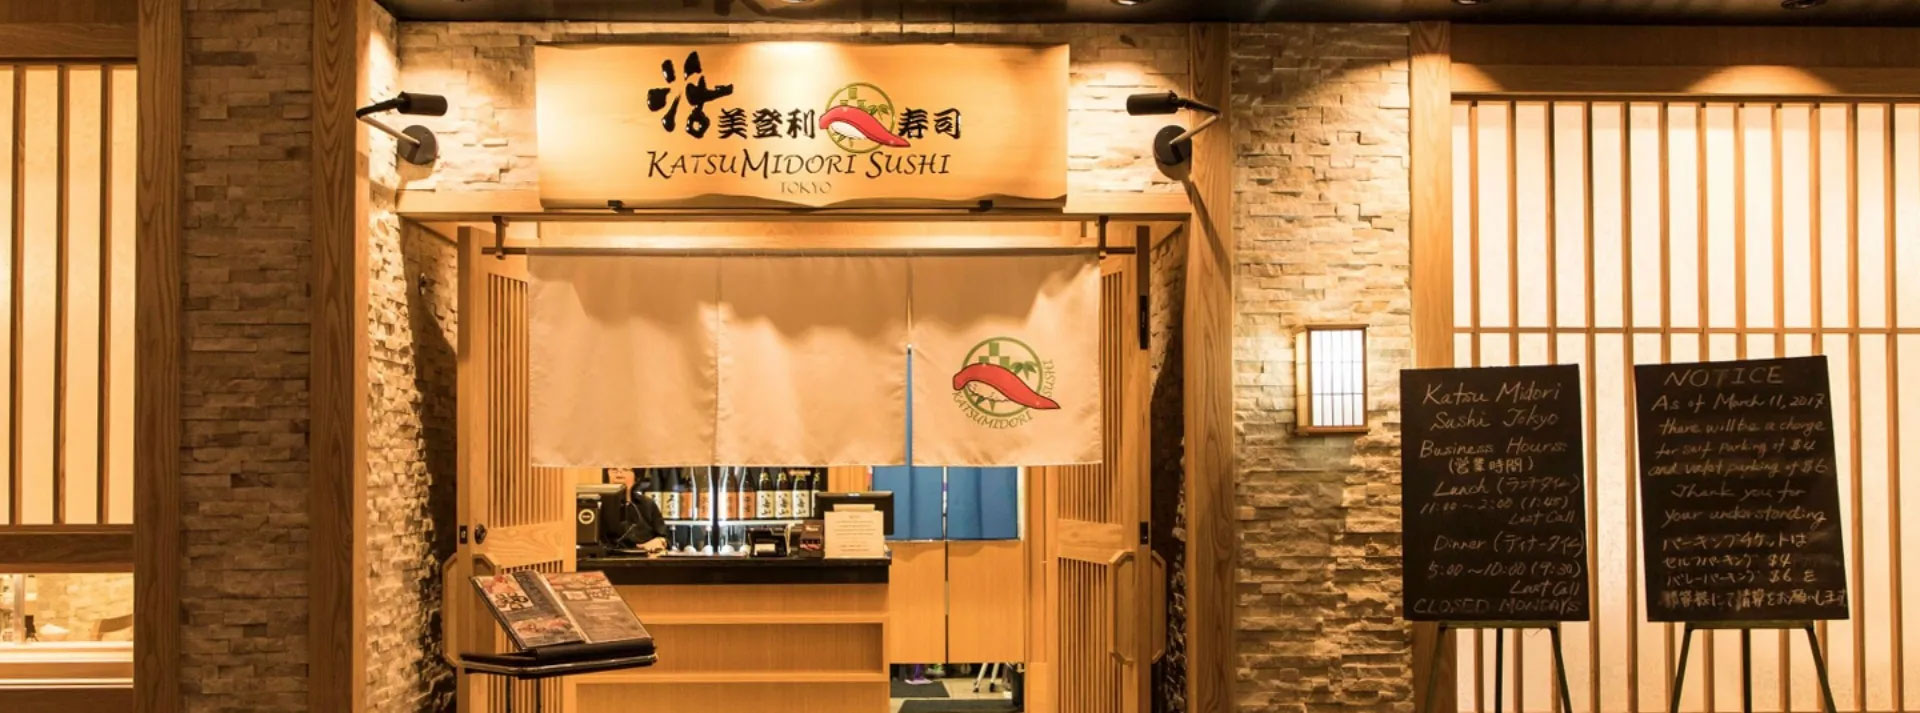 Katsumidori Sushi Tokyo